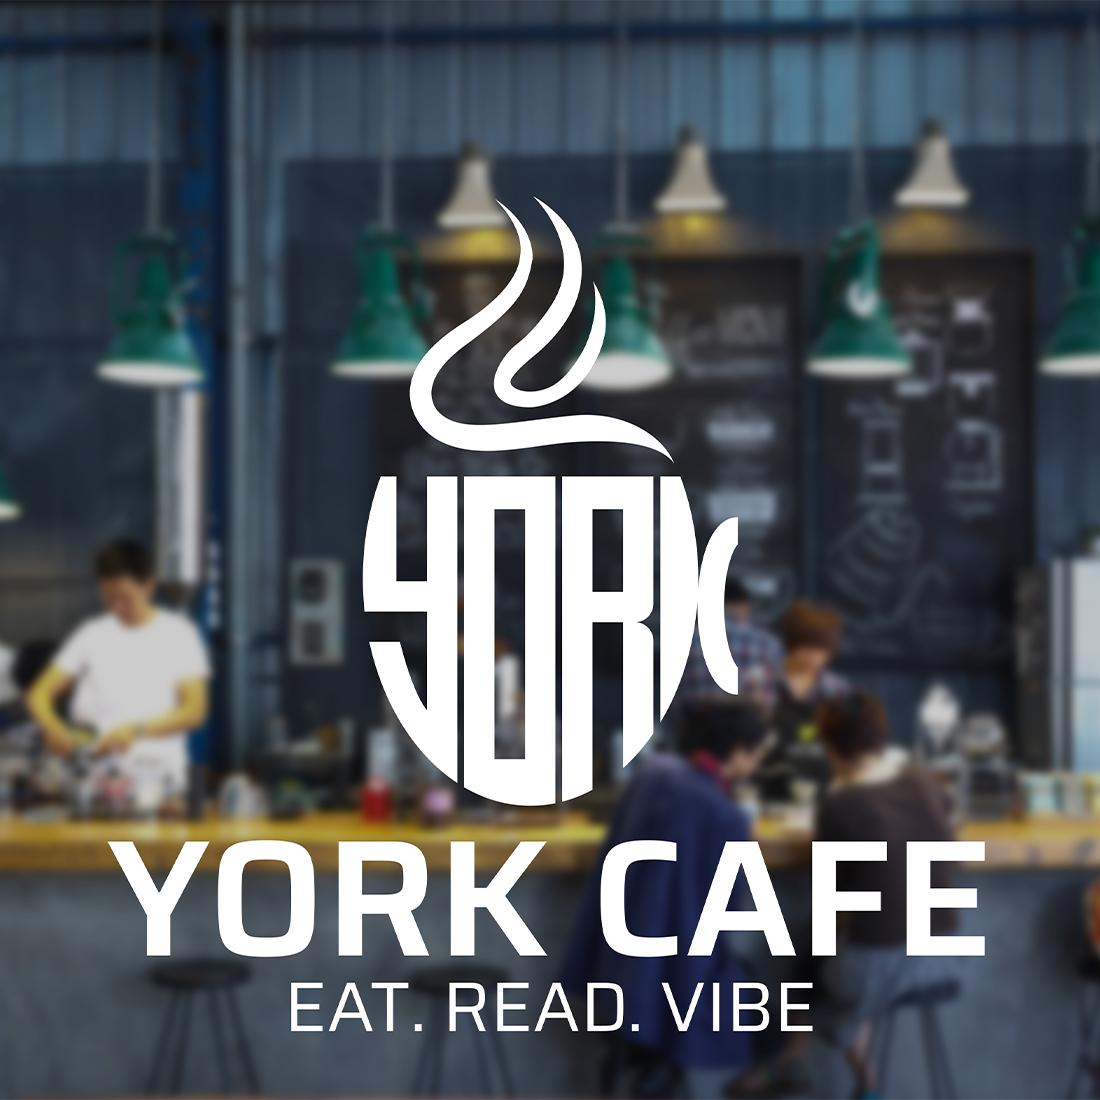 york cafe logo design 3 249